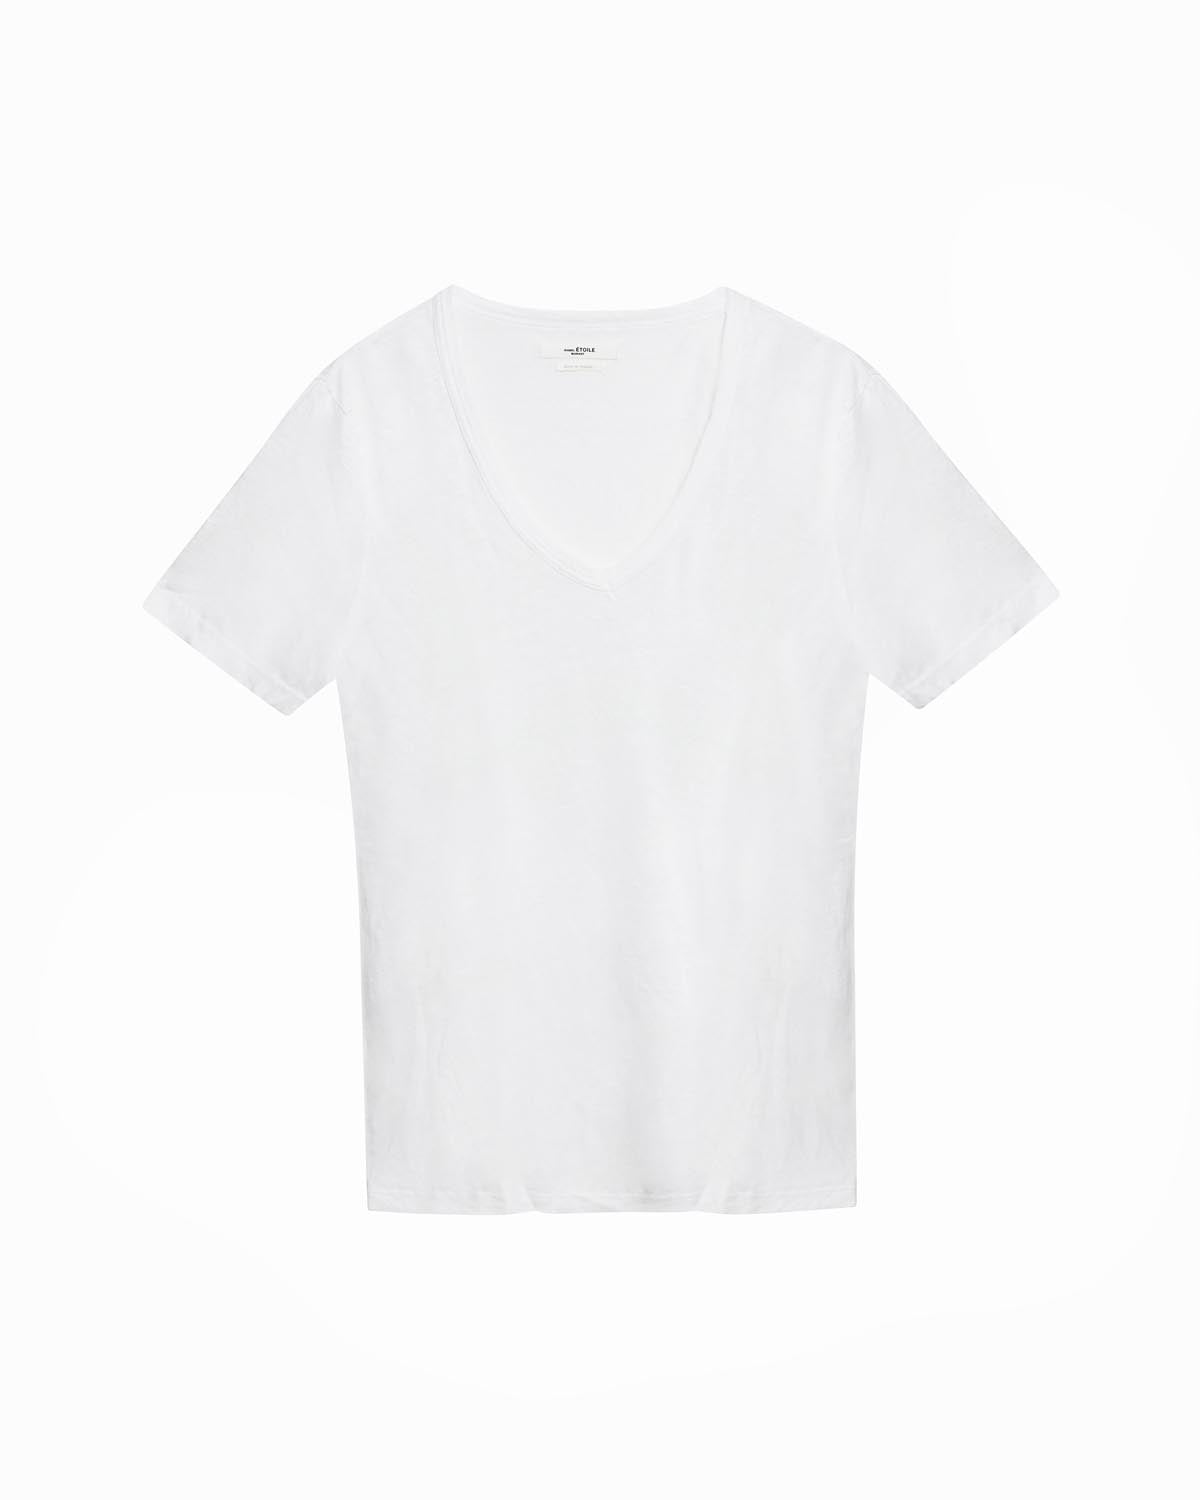 Camiseta kranger Woman Blanco 2